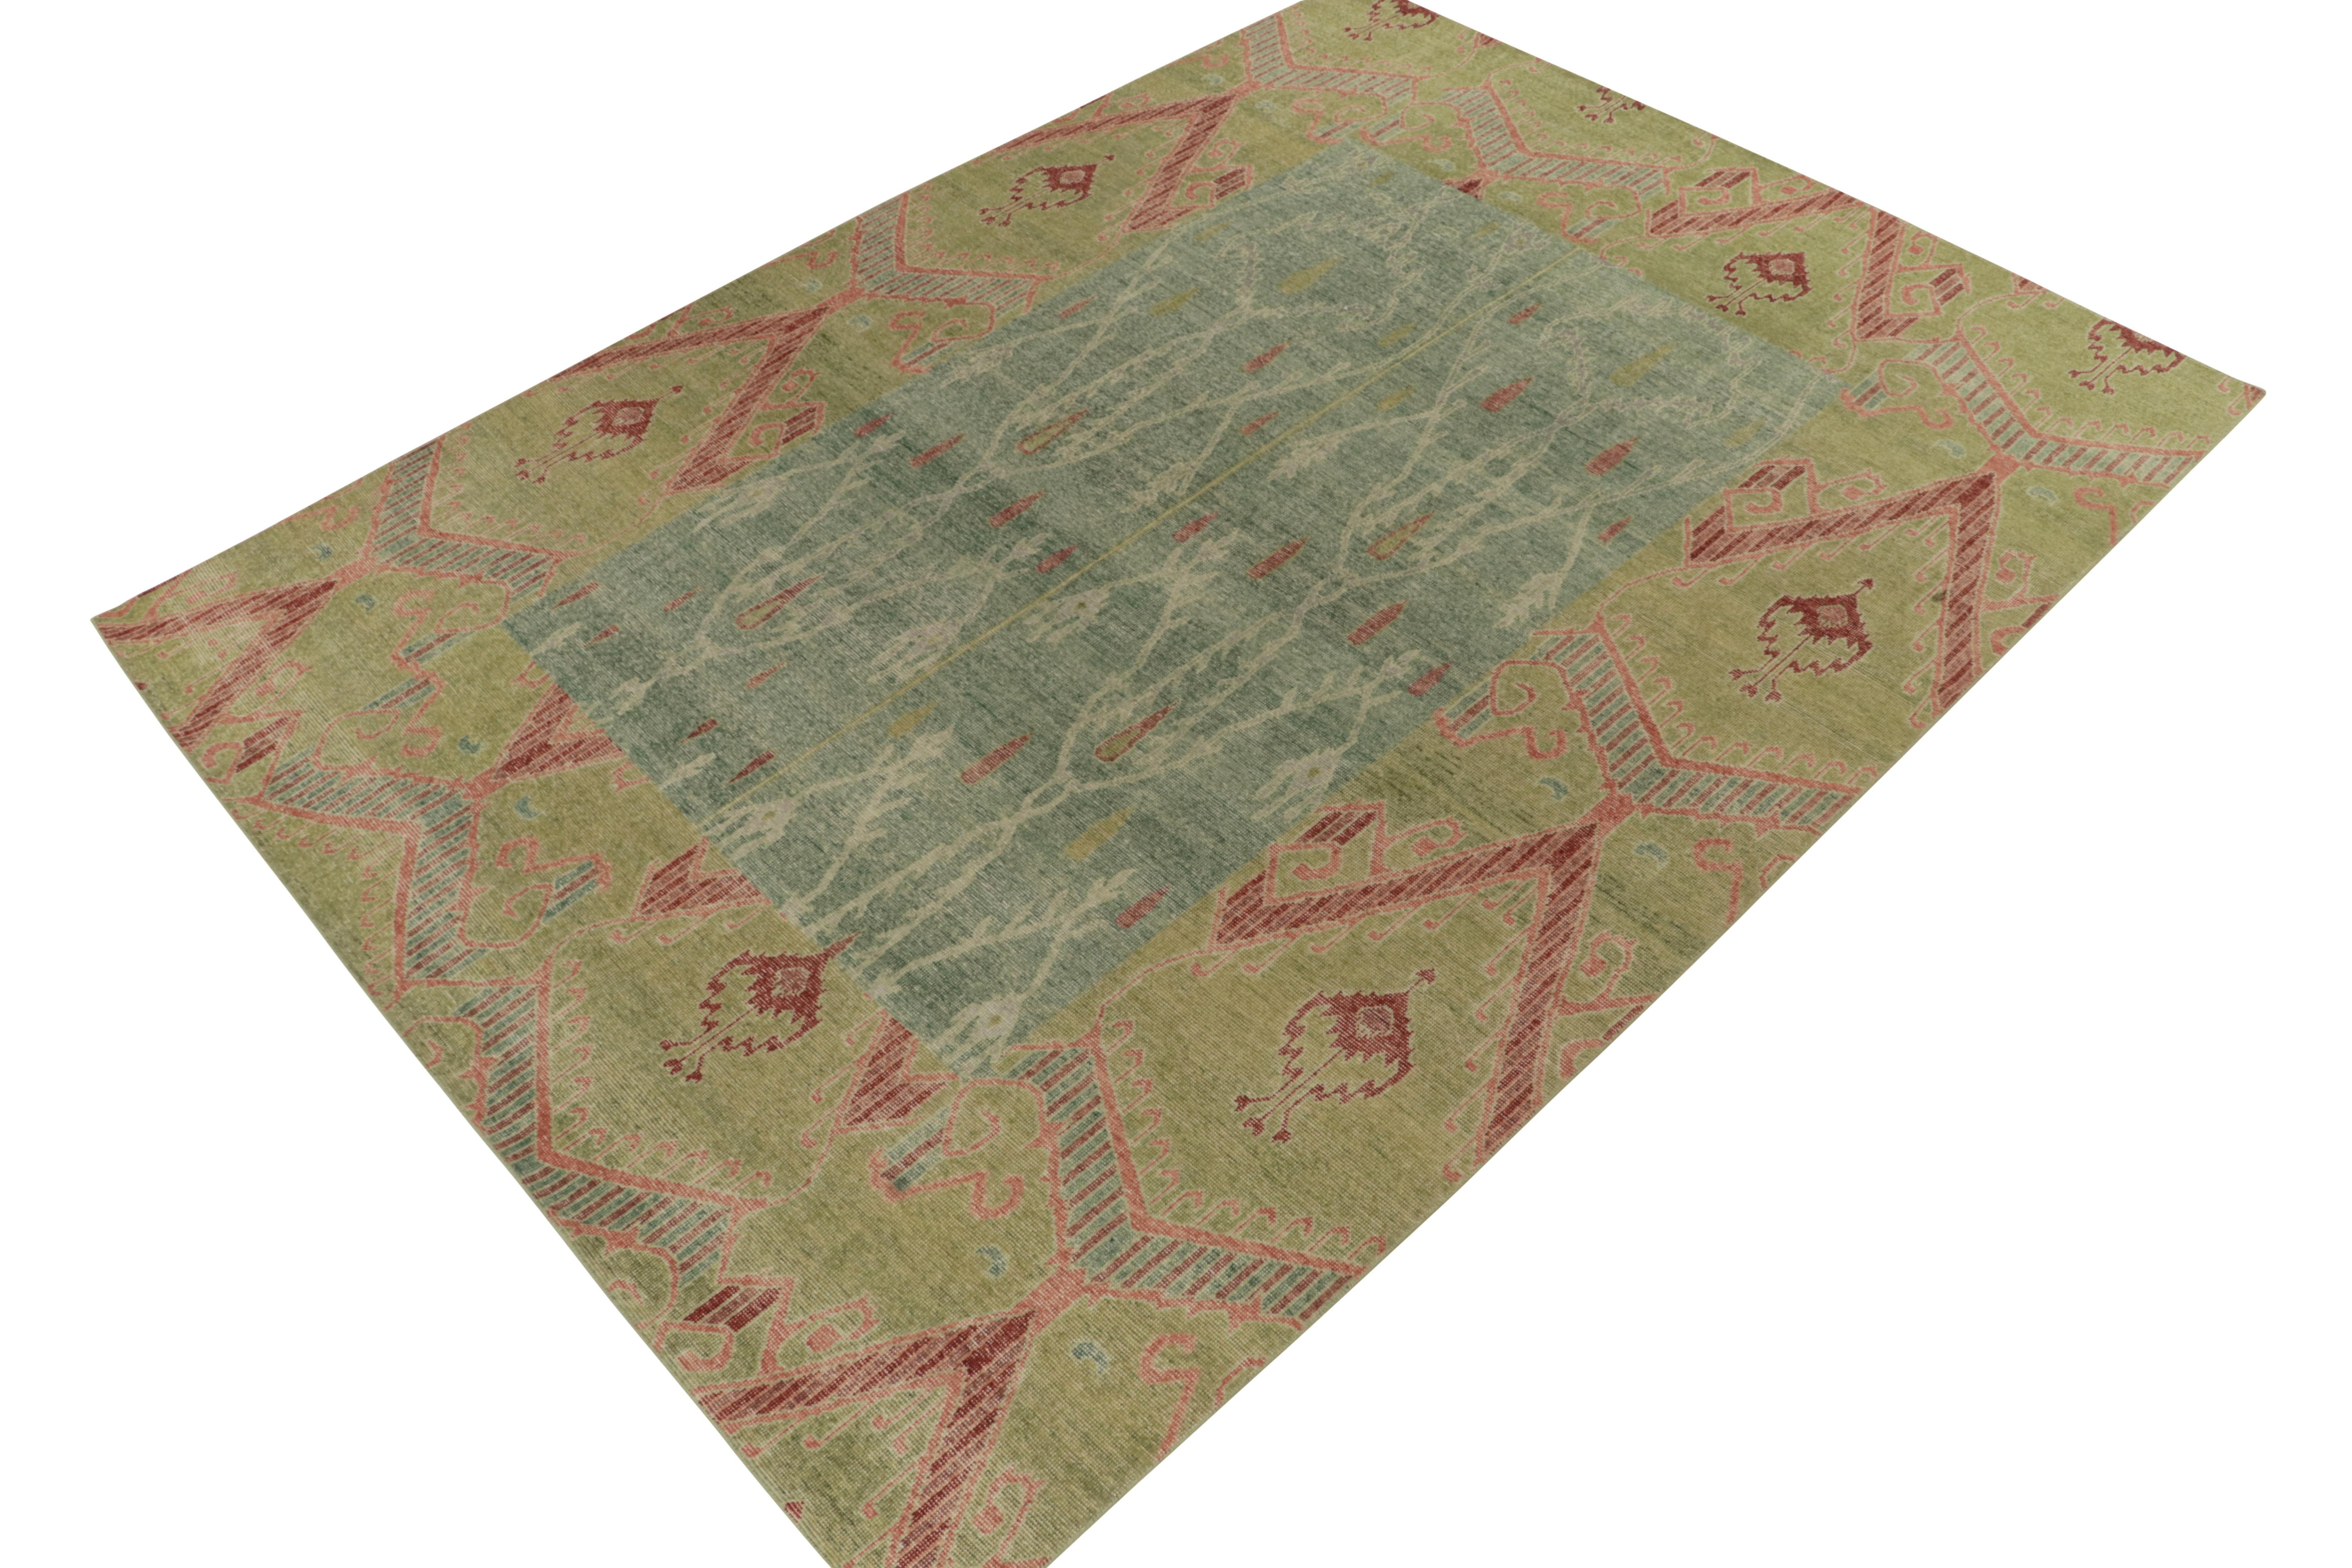 Un magnifique tapis 9x12 en laine nouée à la main de la collection Homage de Rug & Kilim - une encyclopédie texturale audacieuse de motifs et de styles emblématiques. 

Cette inspiration classique est une version ouzbèke du 19ème siècle des motifs